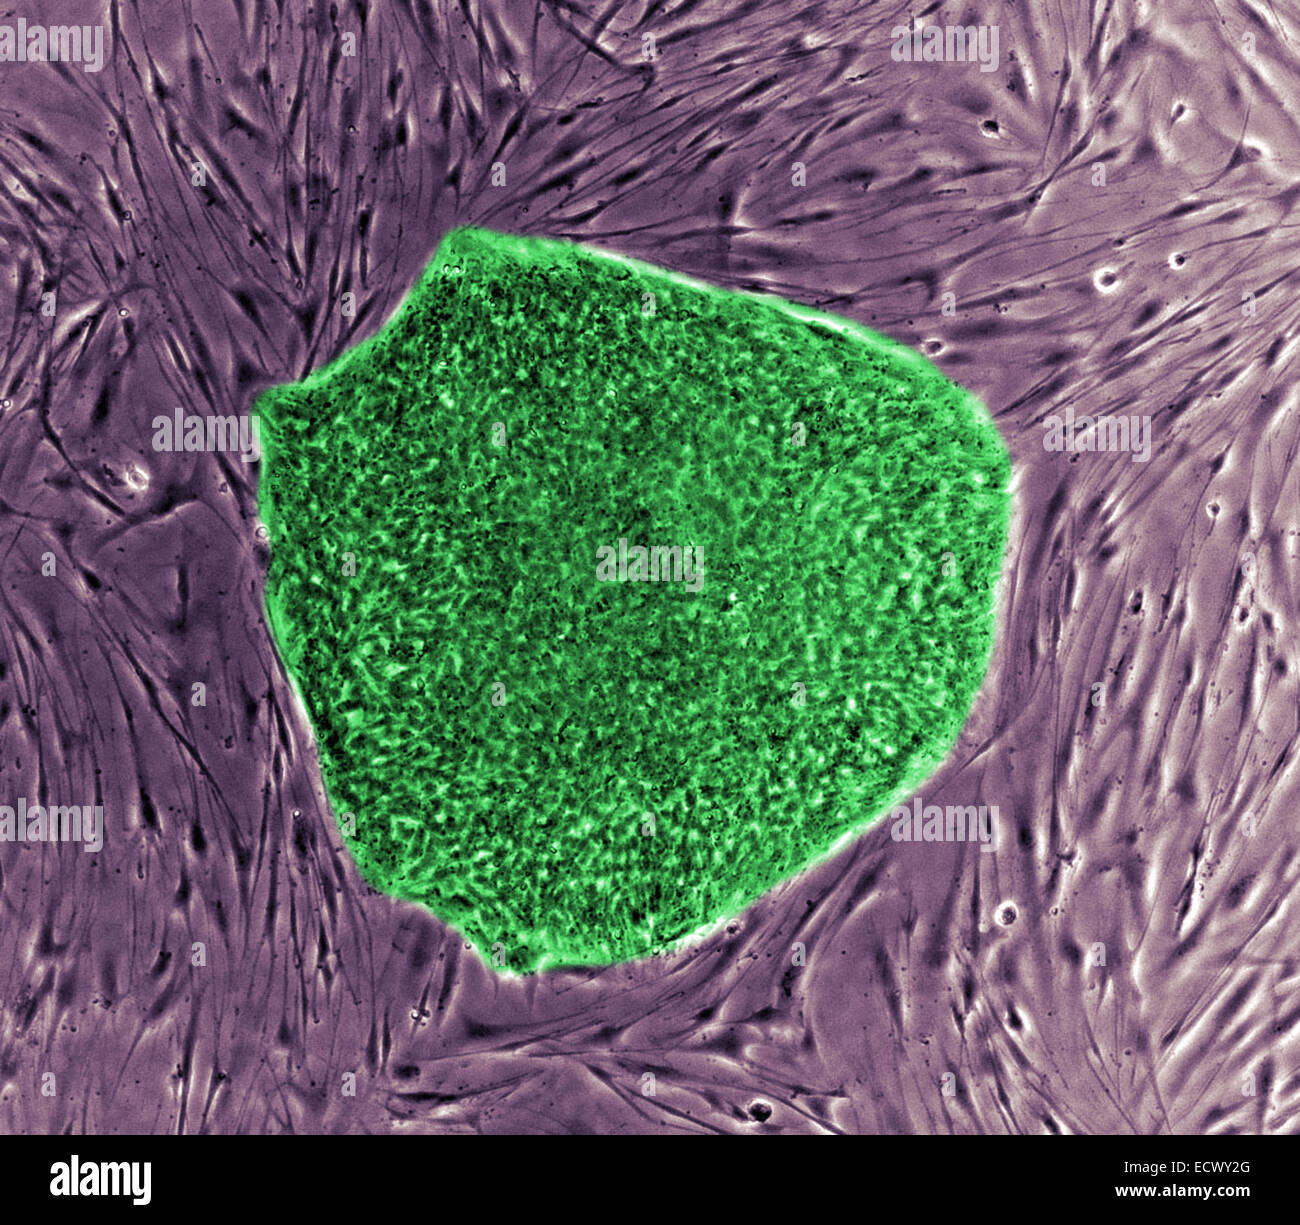 Colonie de cellules souches embryonnaires humaines. Banque D'Images